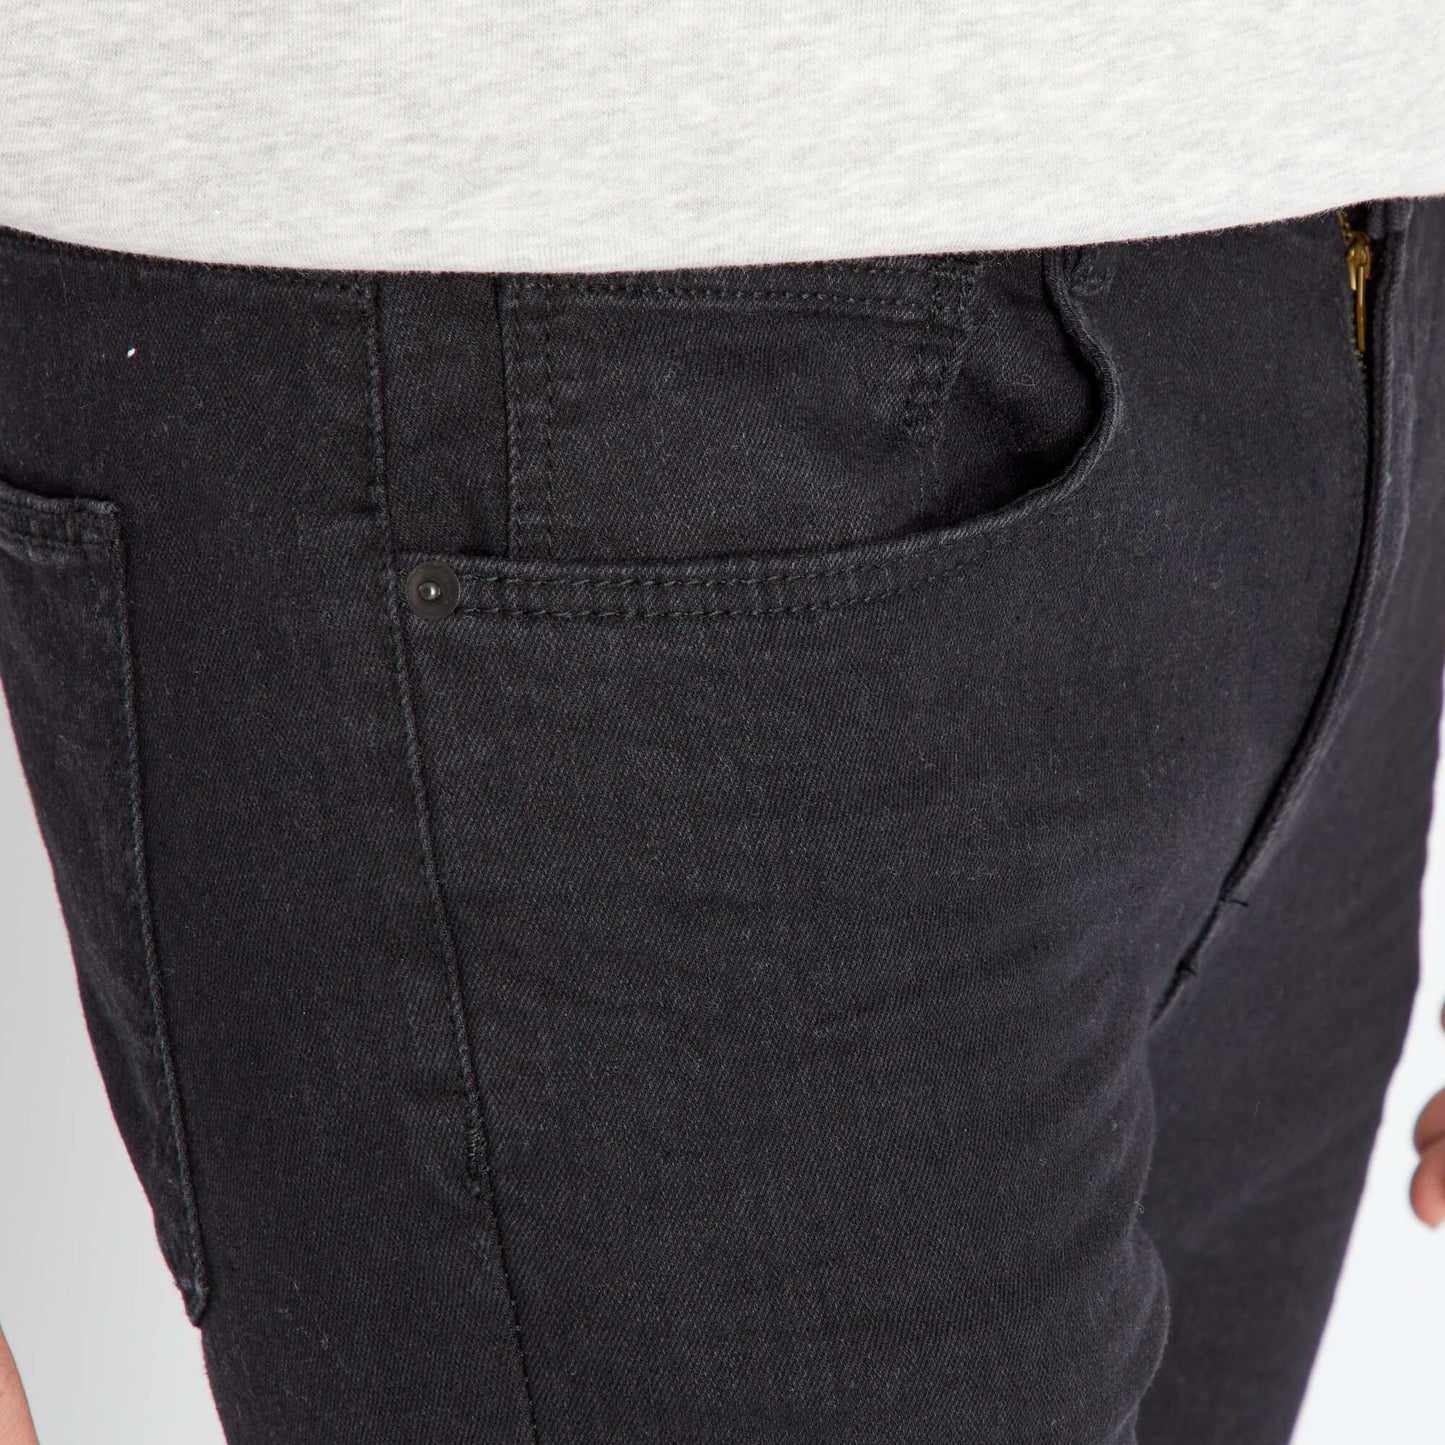 Stretch skinny jeans - 5 pockets BLACK